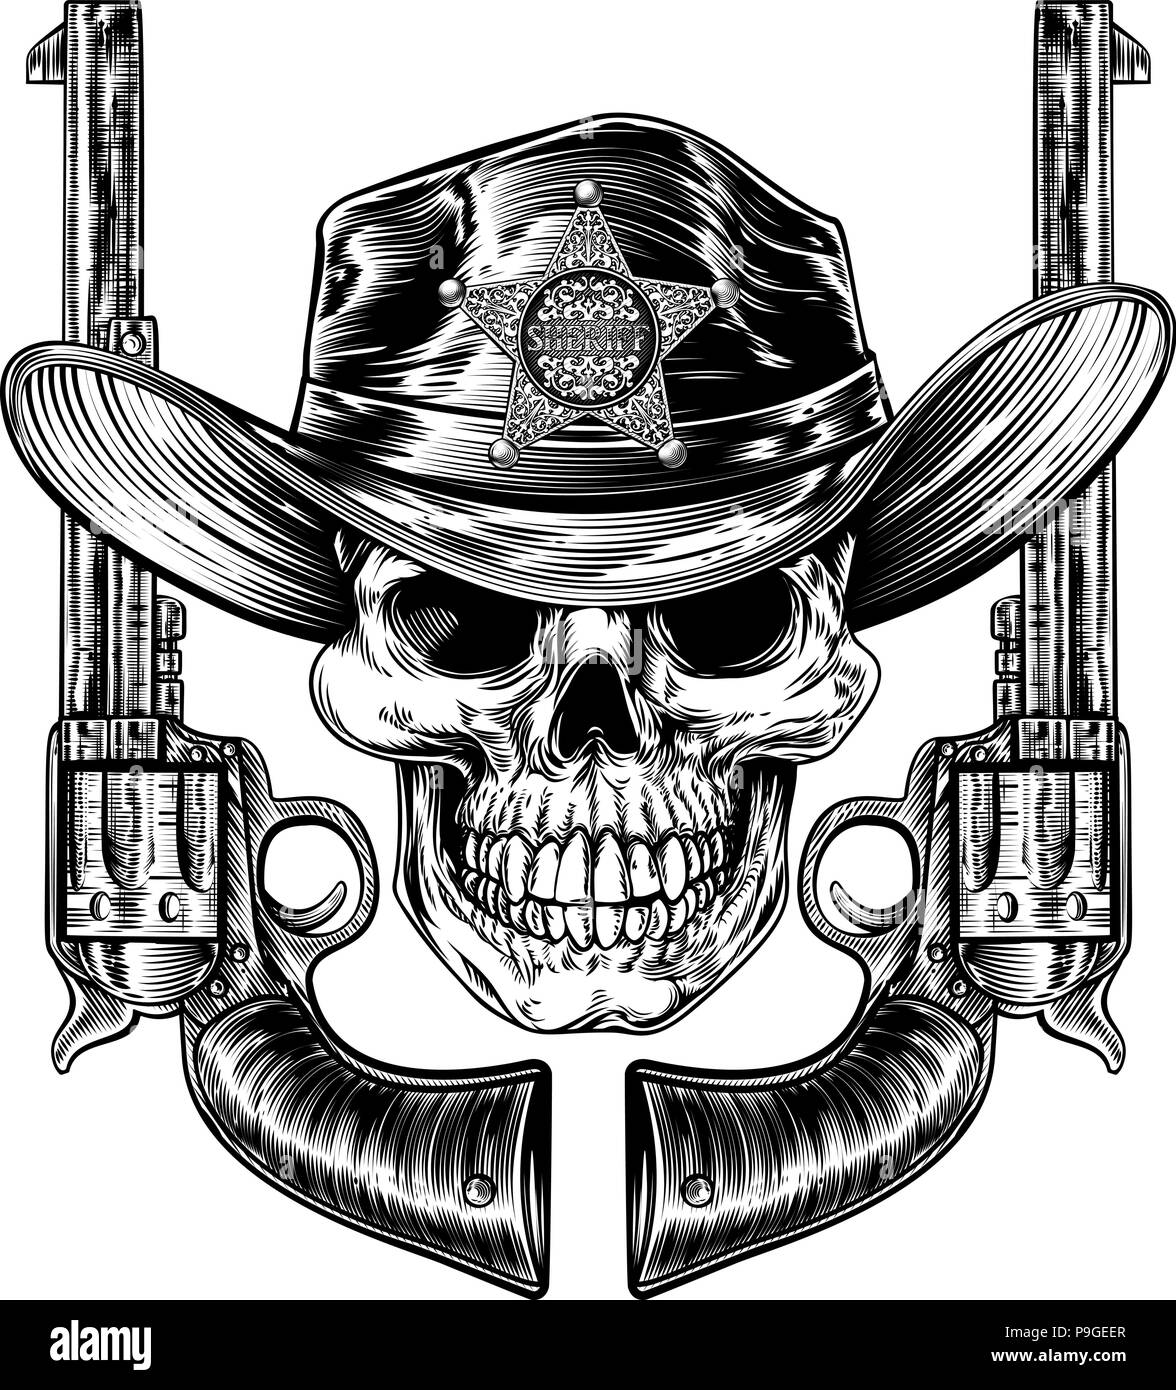 Sheriff Skull And Pistol Hand Guns Stock Vector